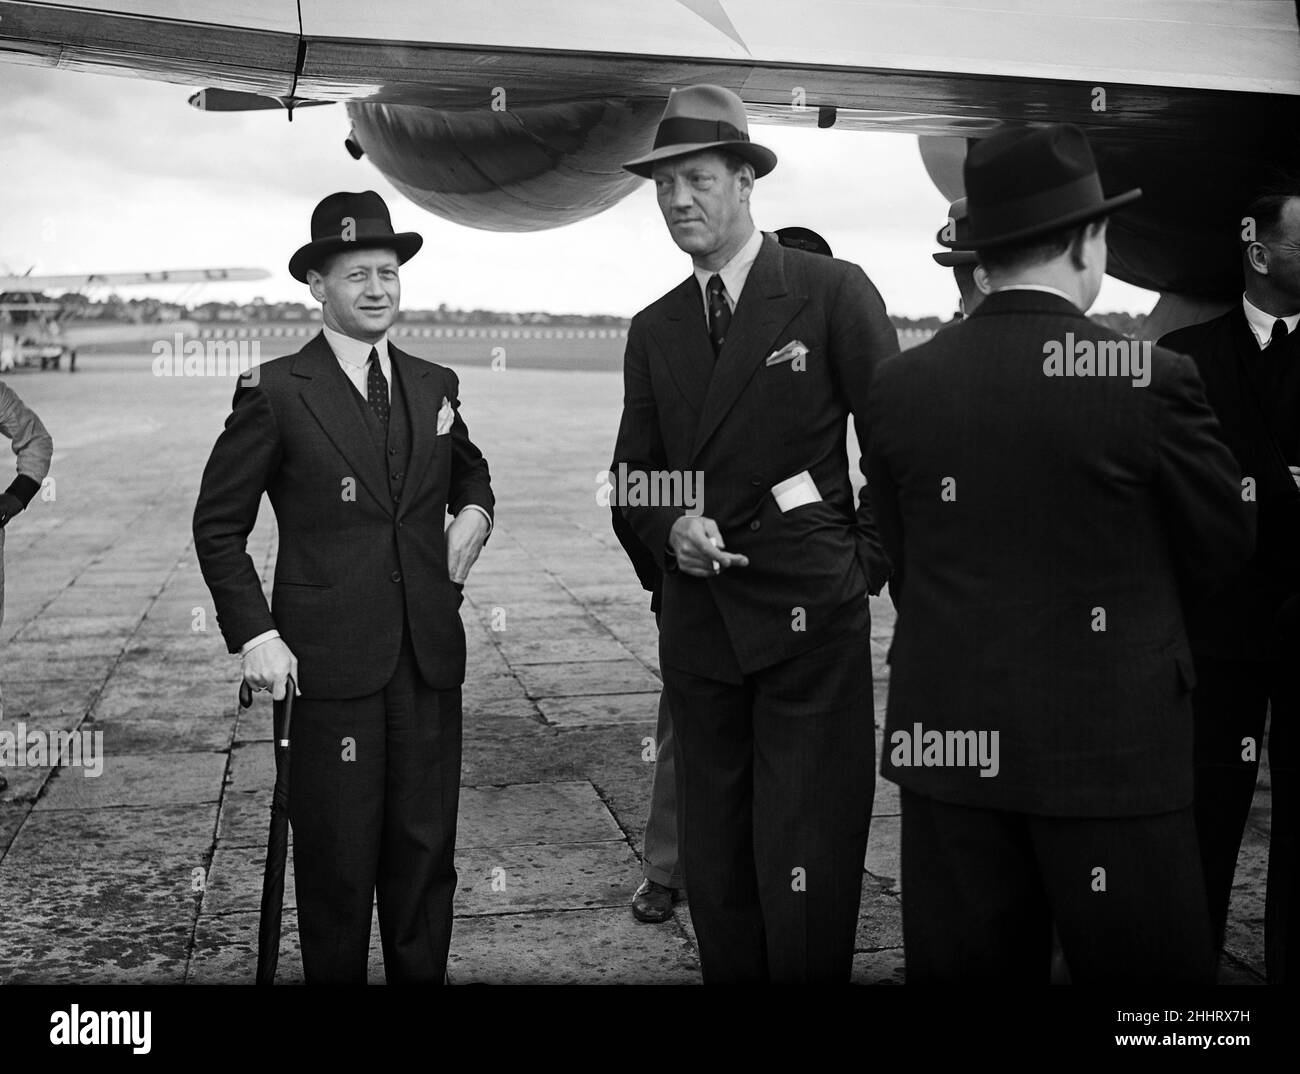 Prinz Axel von Dänemark (Mitte) bei einem offiziellen Besuch von der Focke-Wulf-FW von Danish Air Lines 200A-0 Condor OY-DAMM Dania, der am 28th. Juli 1938 hier in Croydon gesehen wurde, nachdem er den Erstflug zwischen Kopenhagen und London abgeschlossen hatte. Stockfoto